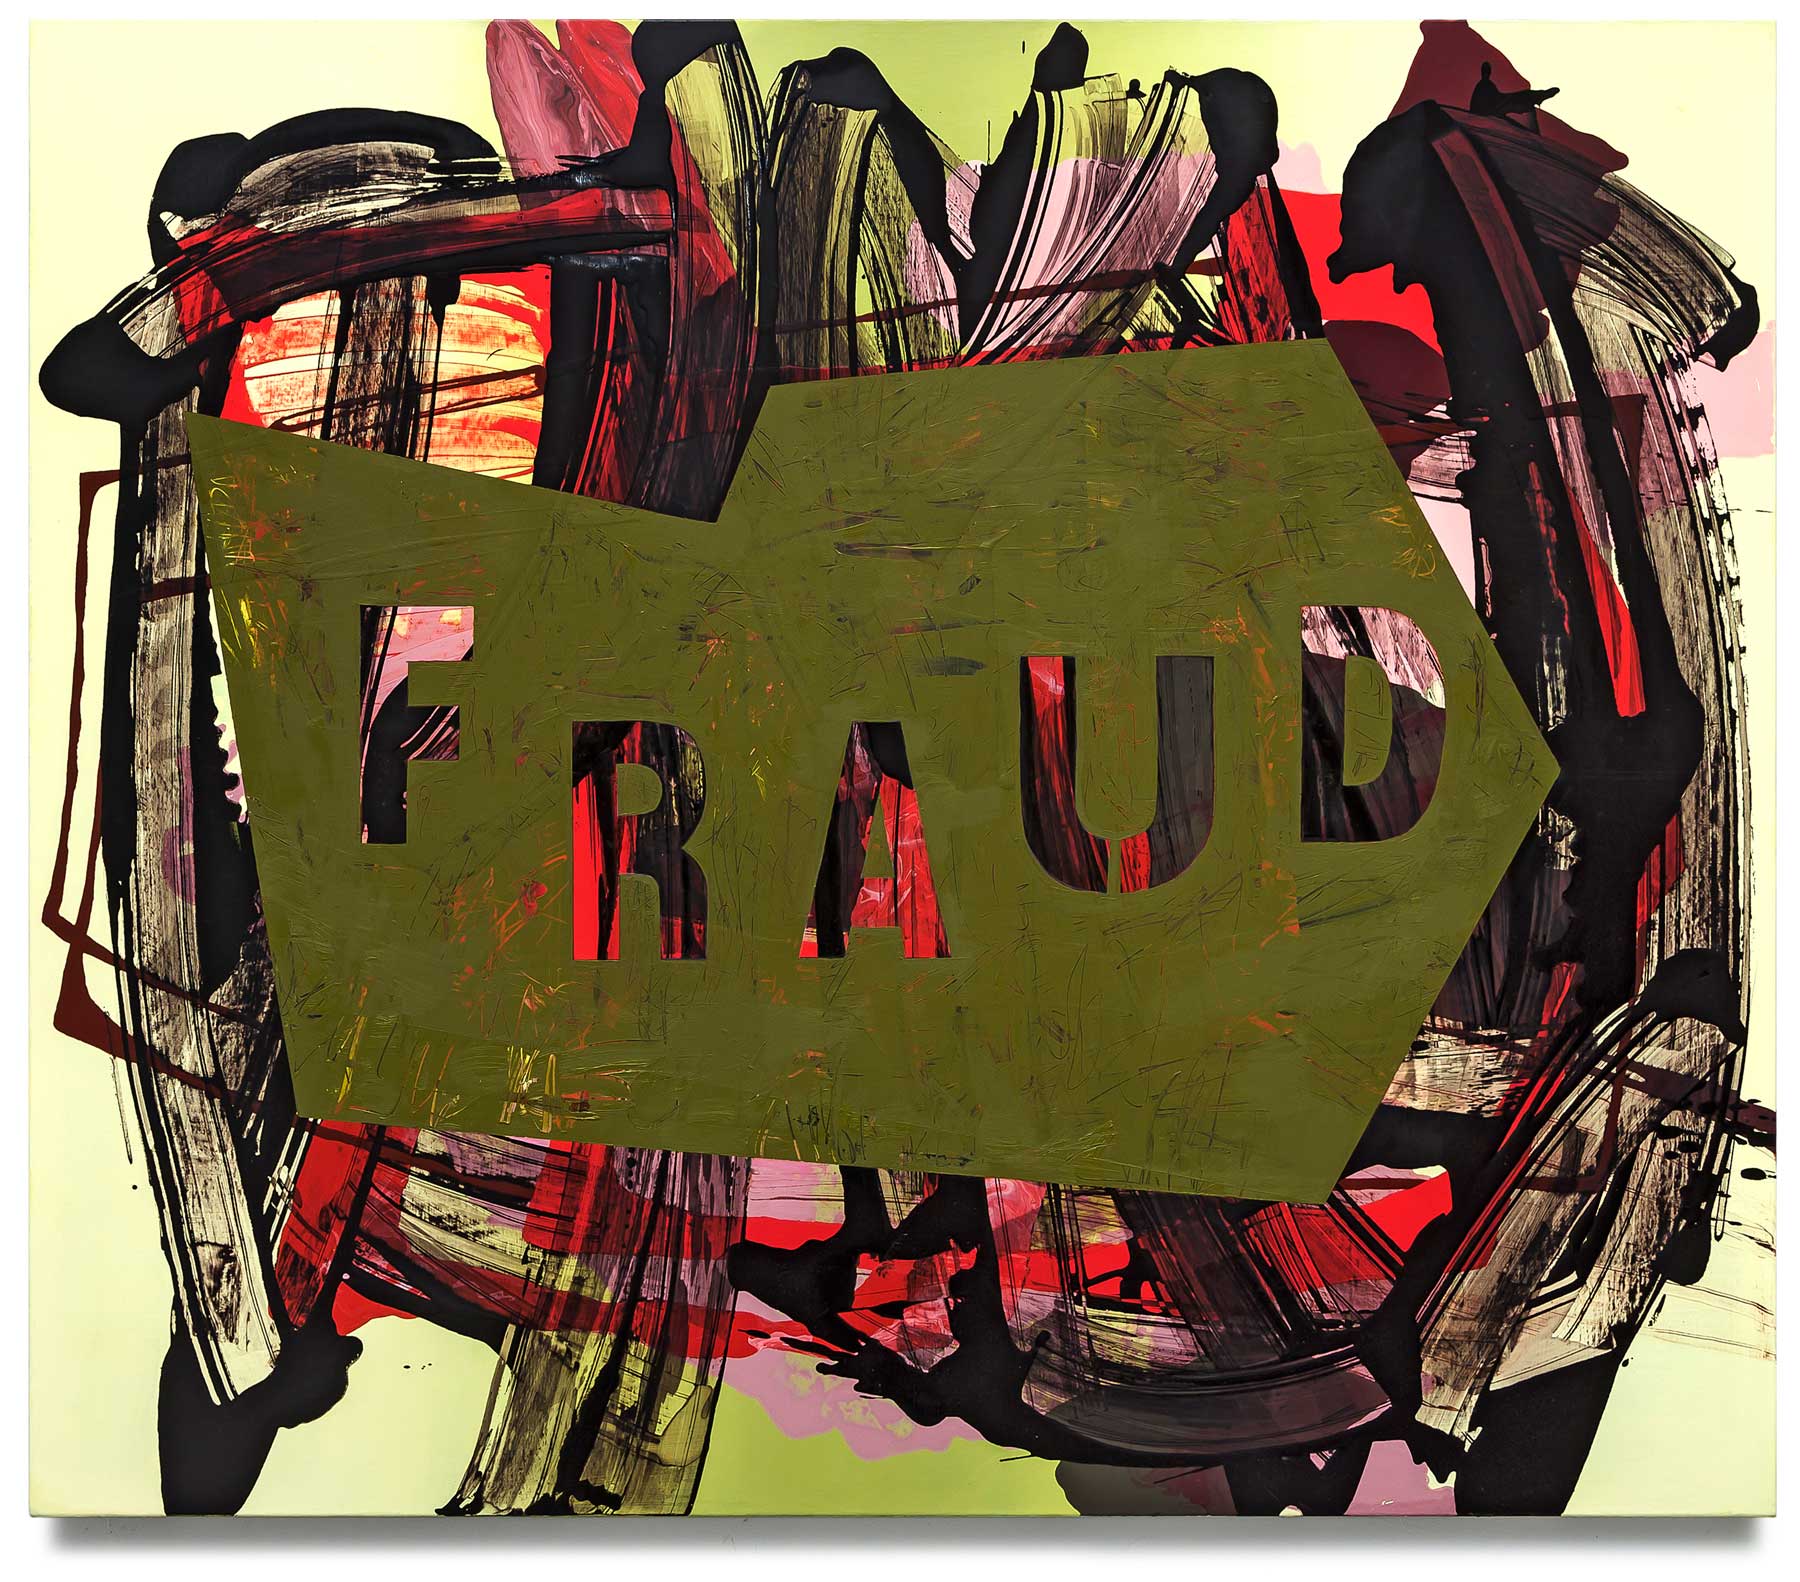 Fraud-oil-on-canvas-127 cm x 147.32 cm.